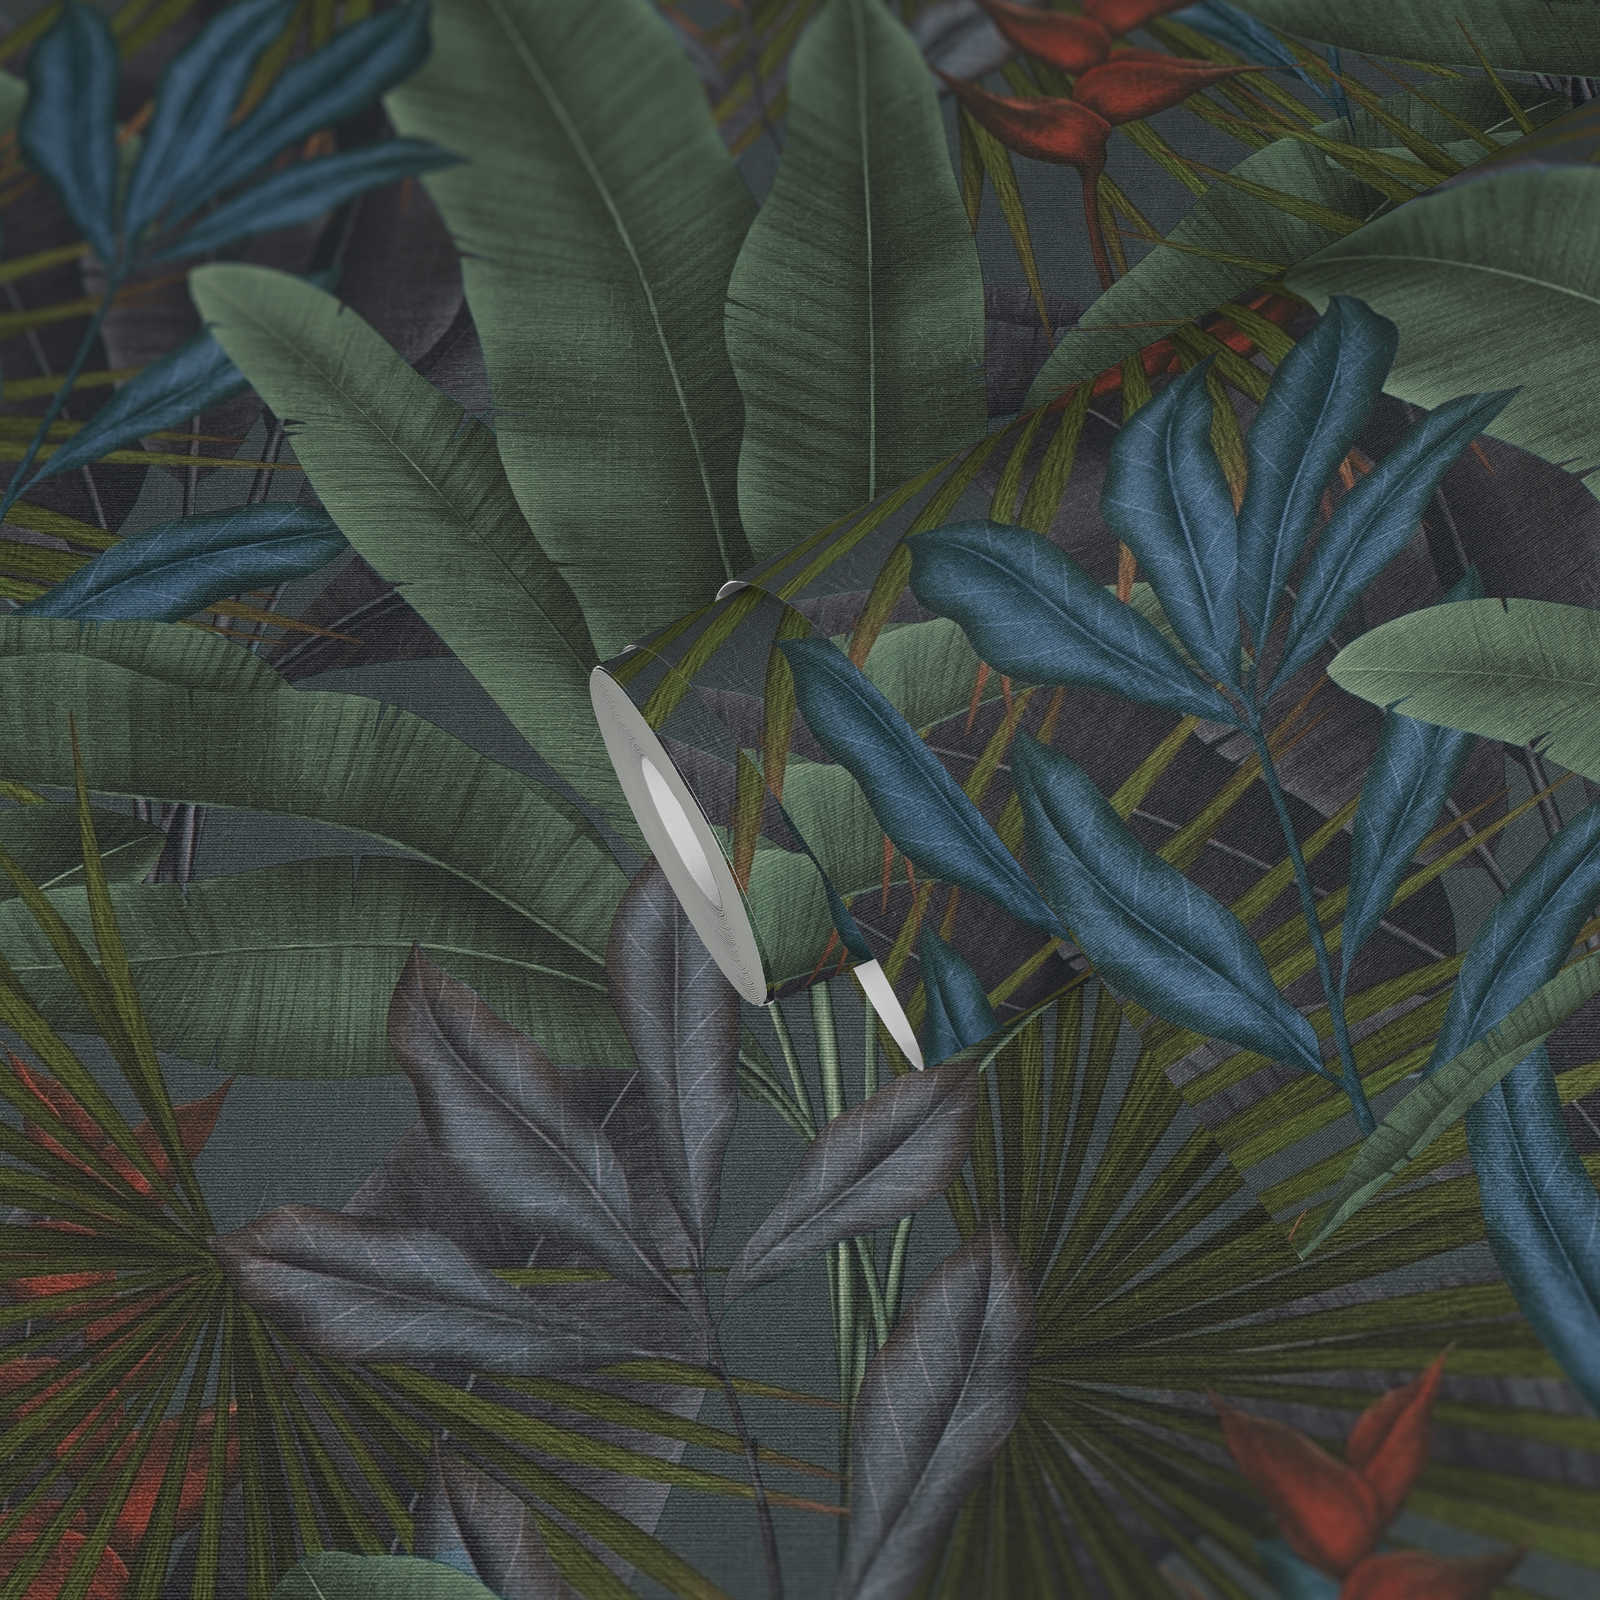             Vliestapete mit Dschungelblätter- Bemusterung und bunten Akzenten – grau, Grün, Rot
        